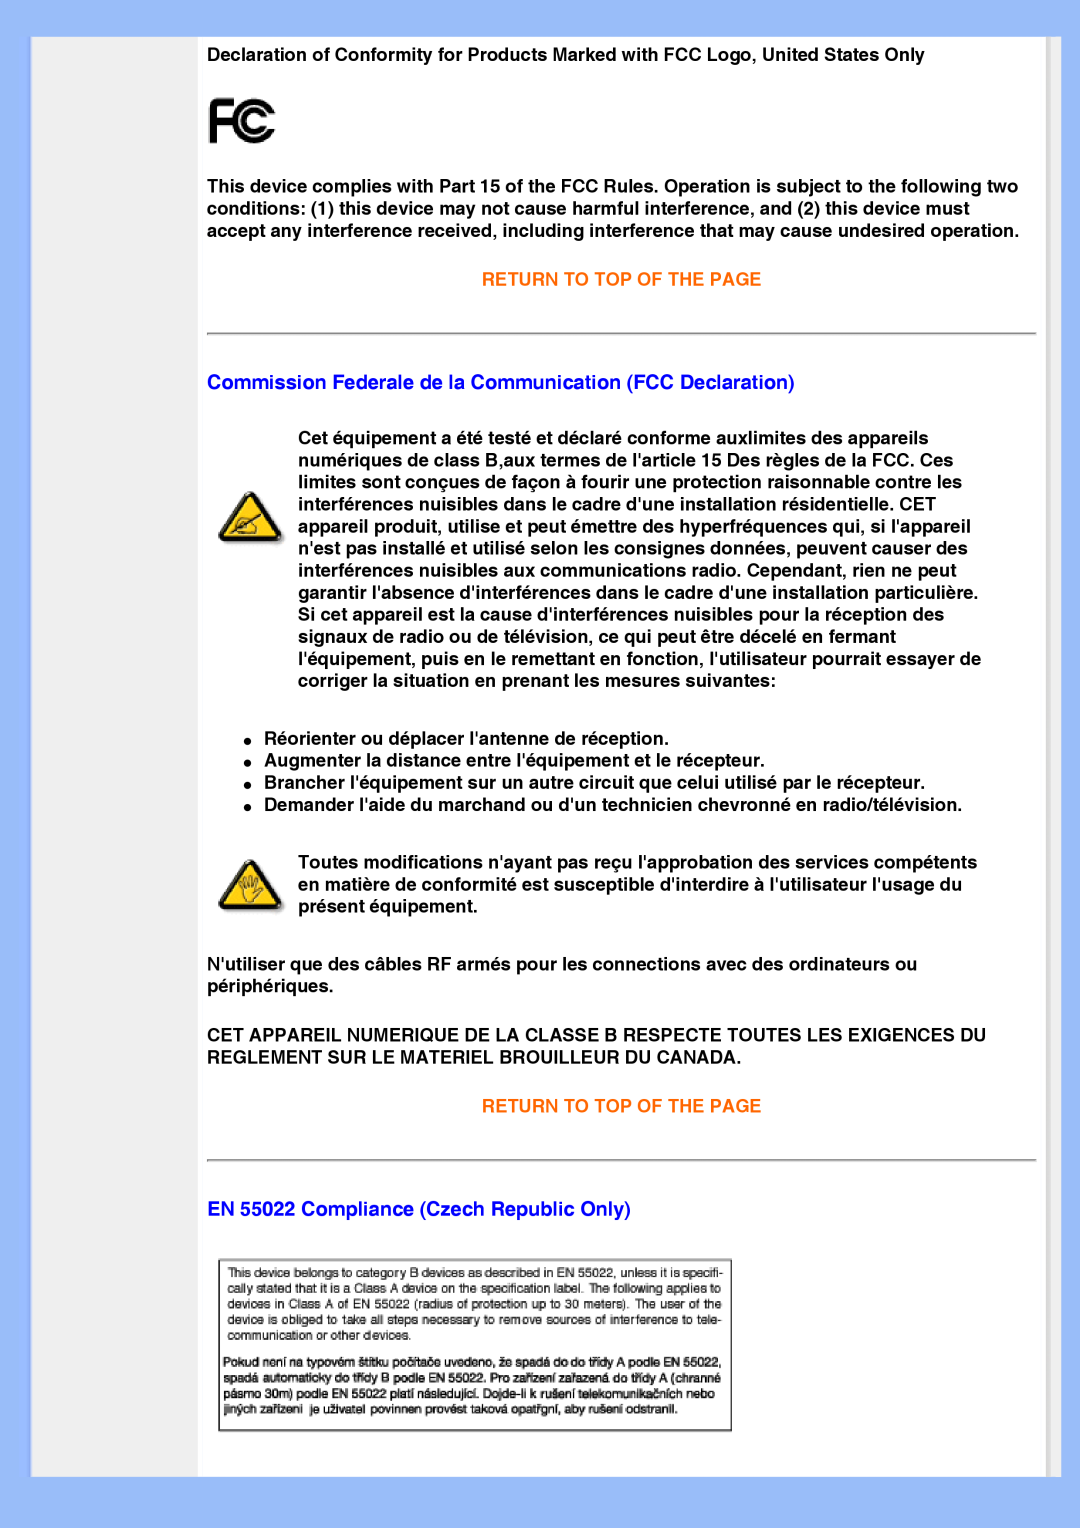 Philips 200AW8 user manual Commission Federale de la Communication FCC Declaration, EN 55022 Compliance Czech Republic Only 